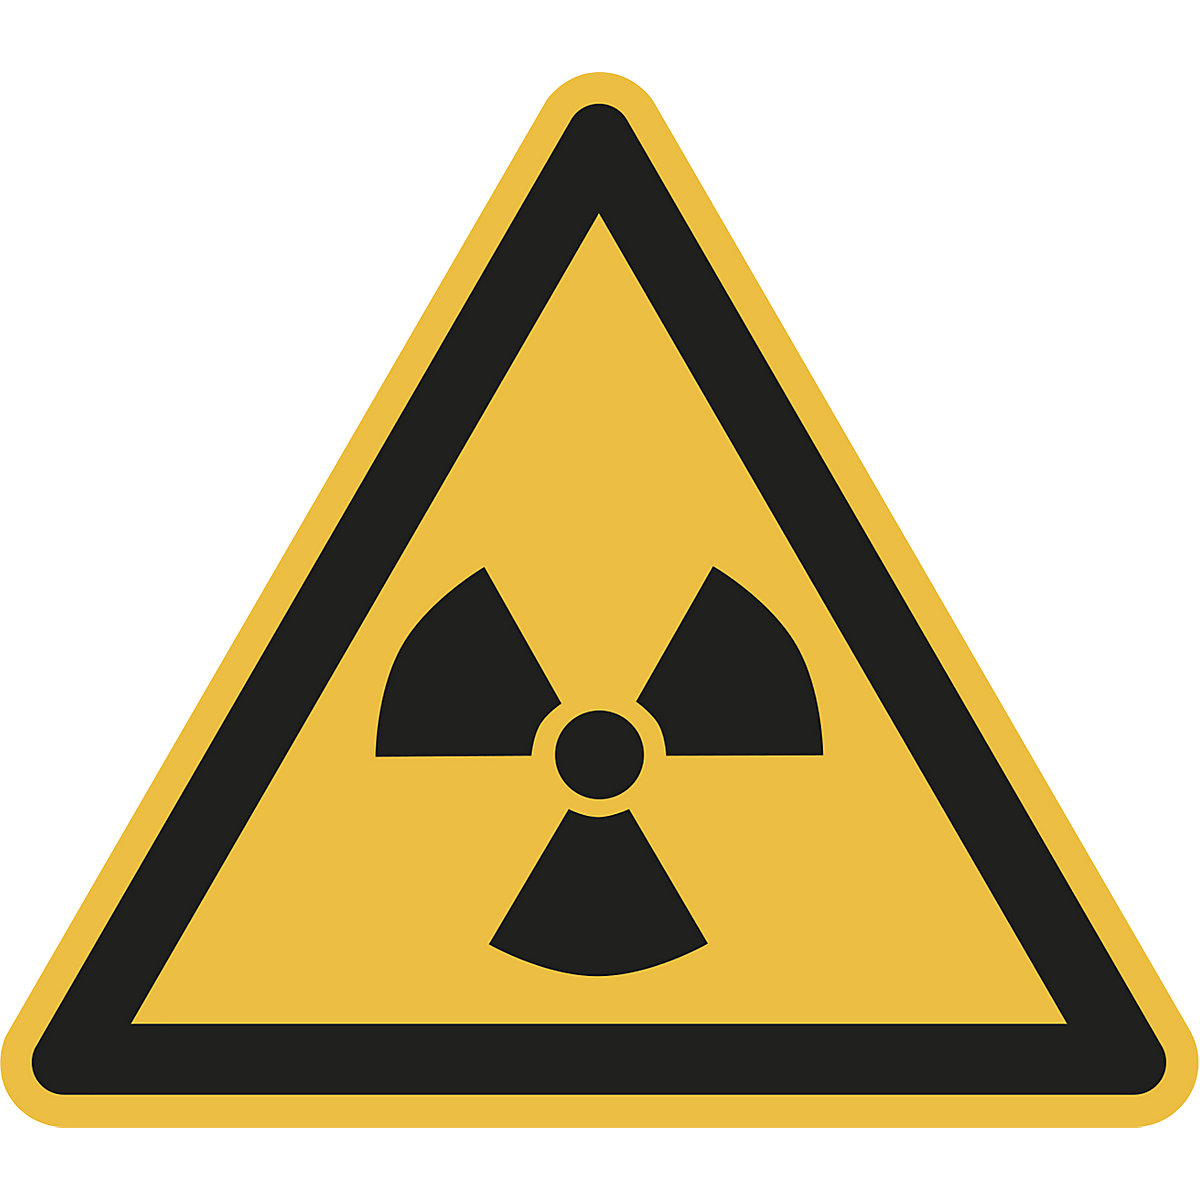 Výstražná značka, výstraha před radioaktivními látkami nebo ionizujícím zářením, bal.j. 10 ks, hliník, délka ramene 200 mm